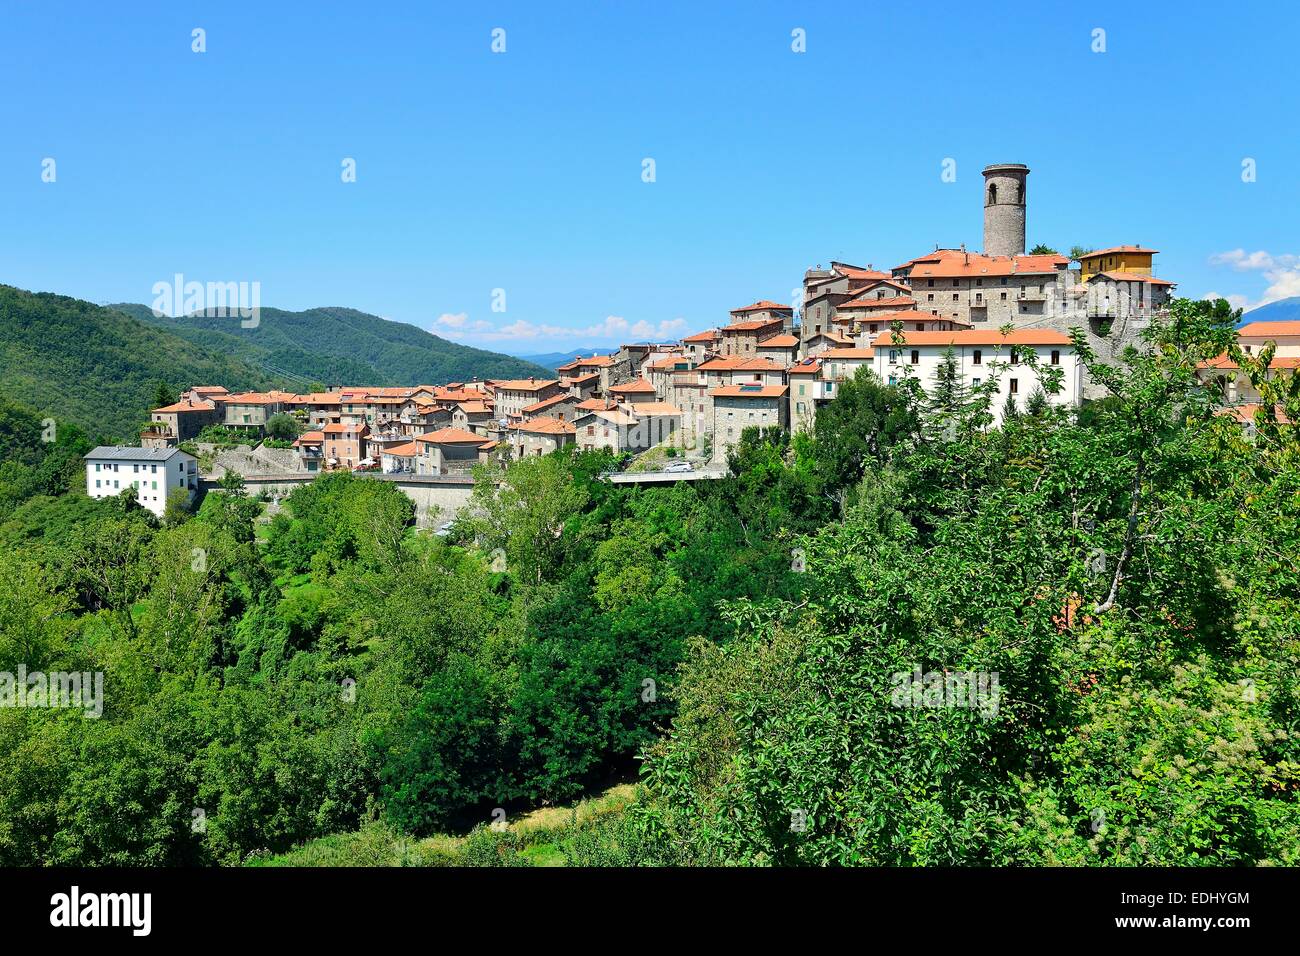 Il villaggio di montagna di Minucciano nelle Alpi Apuane, Garfagnana in provincia di Lucca - Toscana, Italia Foto Stock